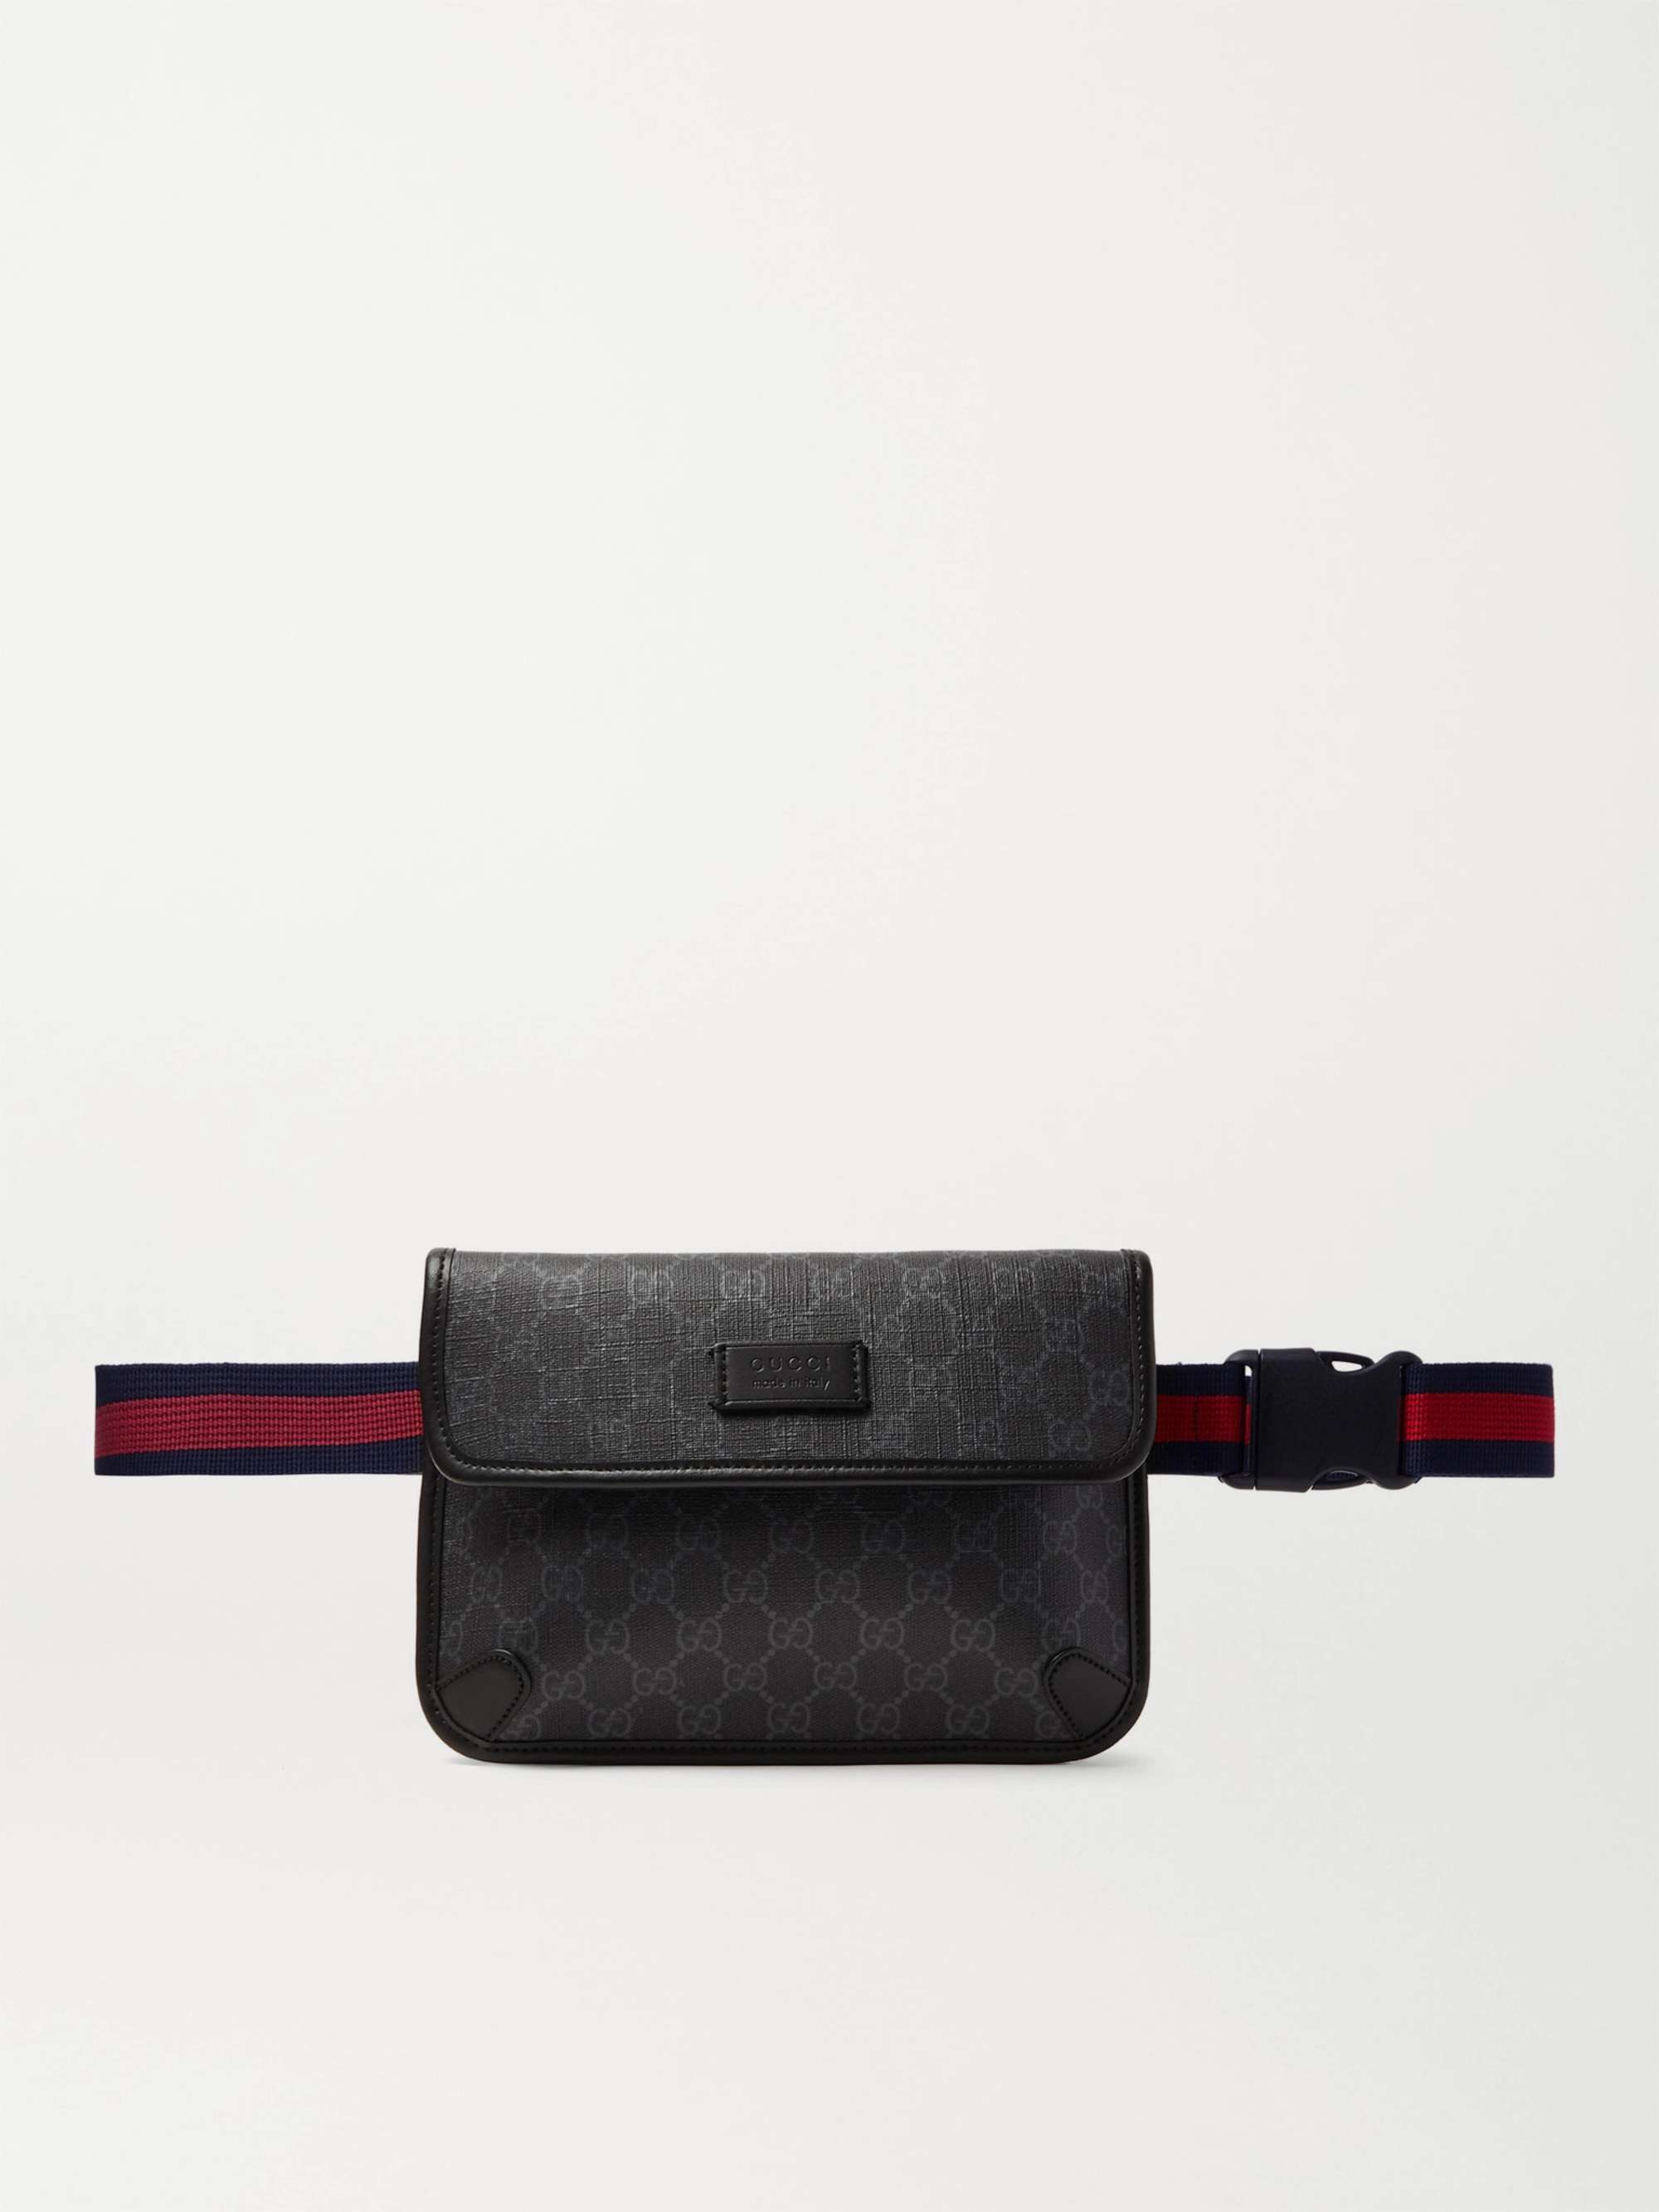 Gucci GG Supreme Belt Bag - Black